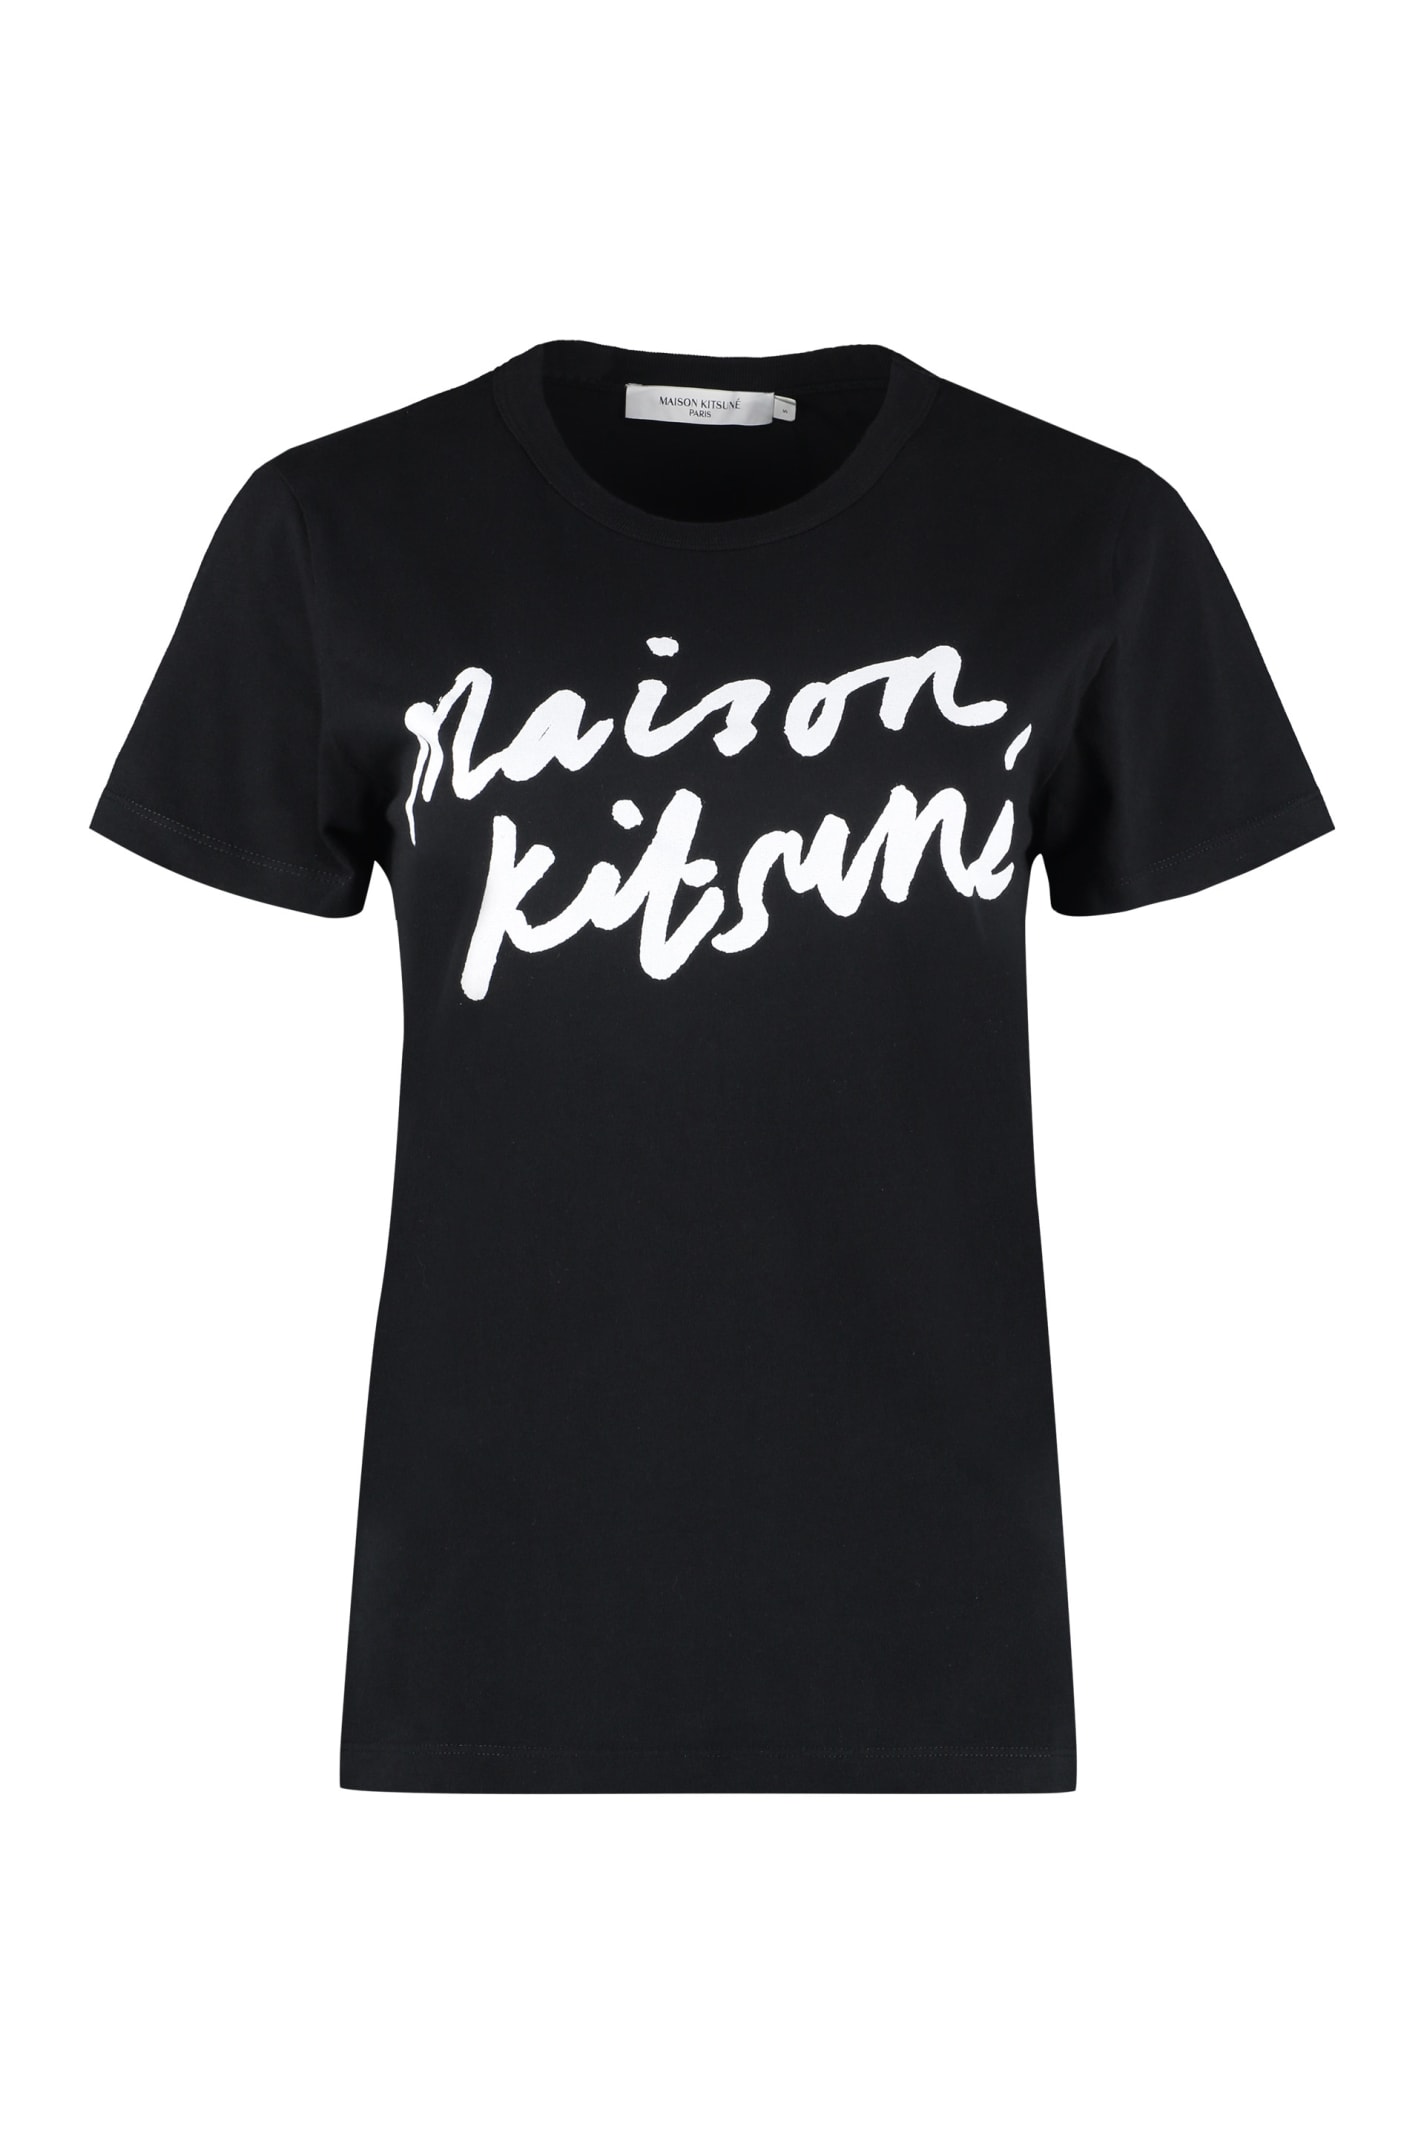 Maison Kitsuné Logo Cotton T-shirt